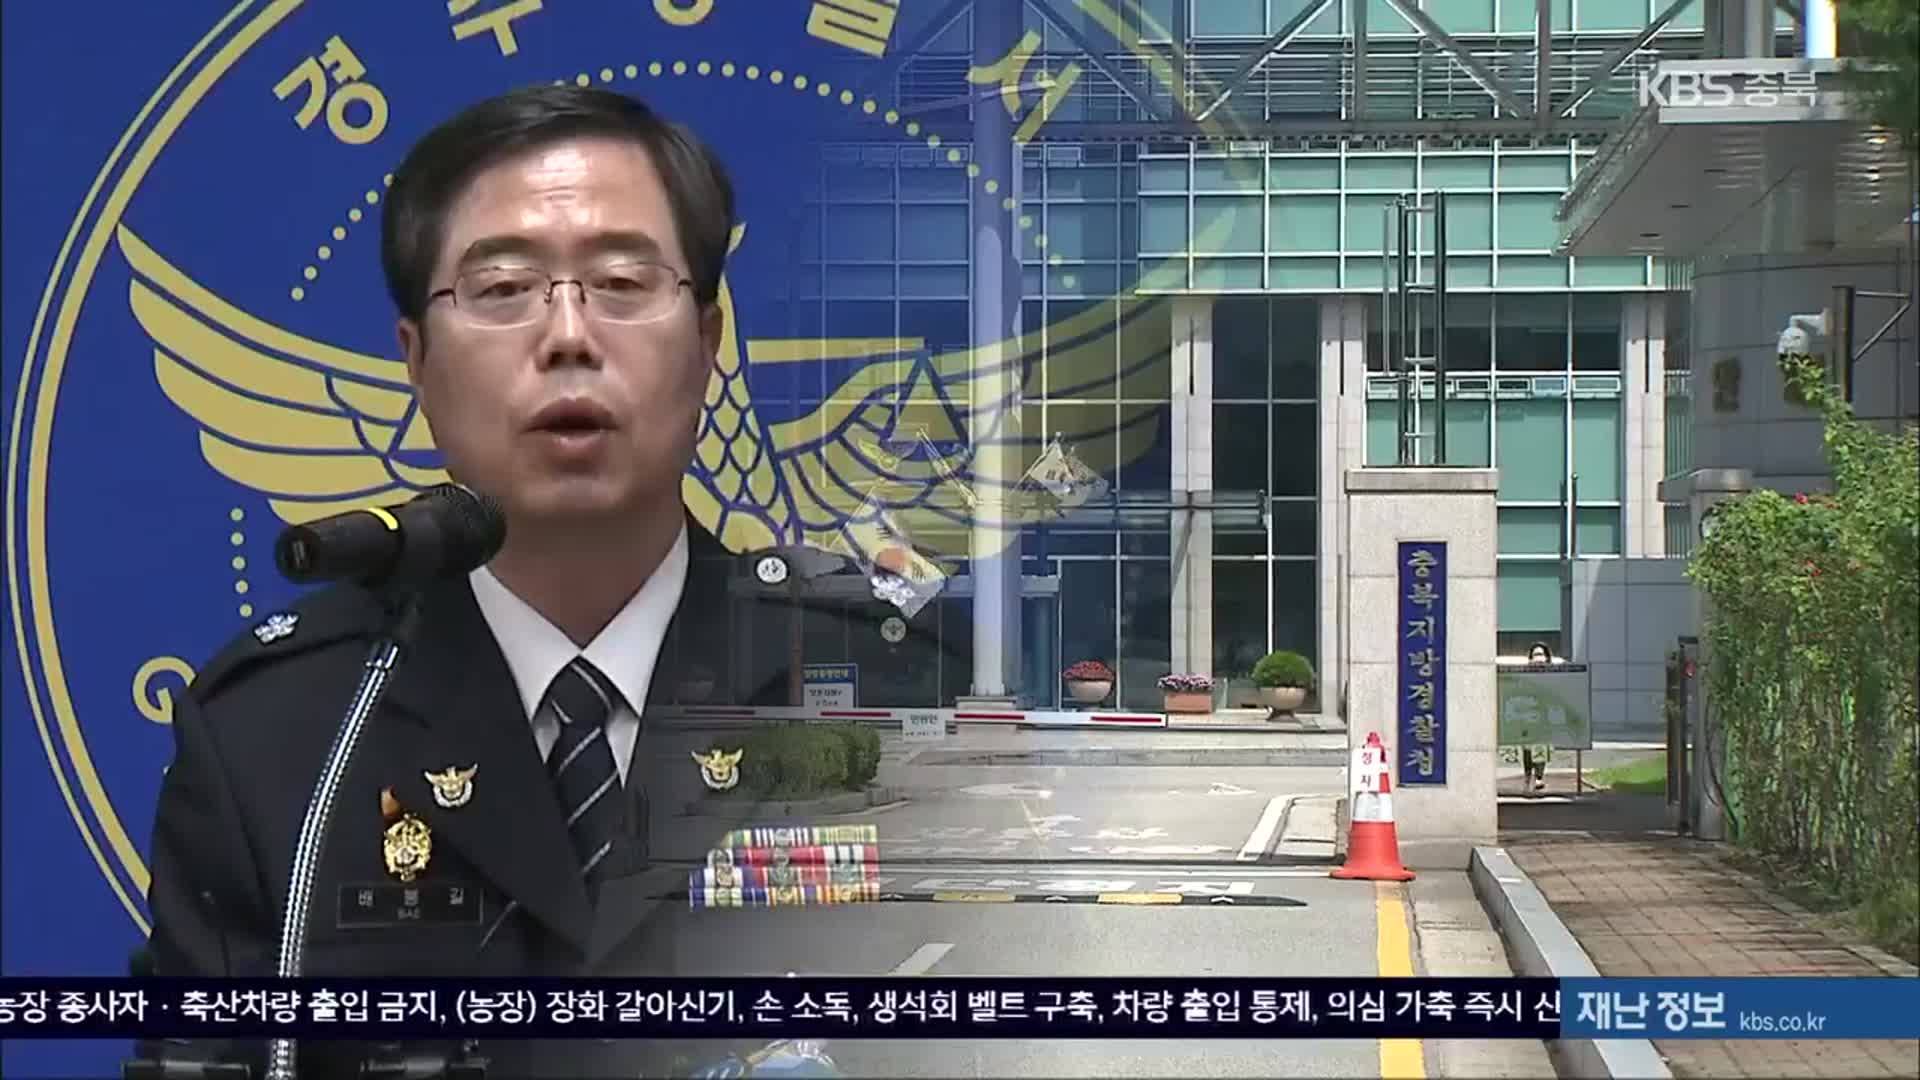 ‘기밀 유출 혐의’ 충북경찰 간부, 한 달만에 직위해제